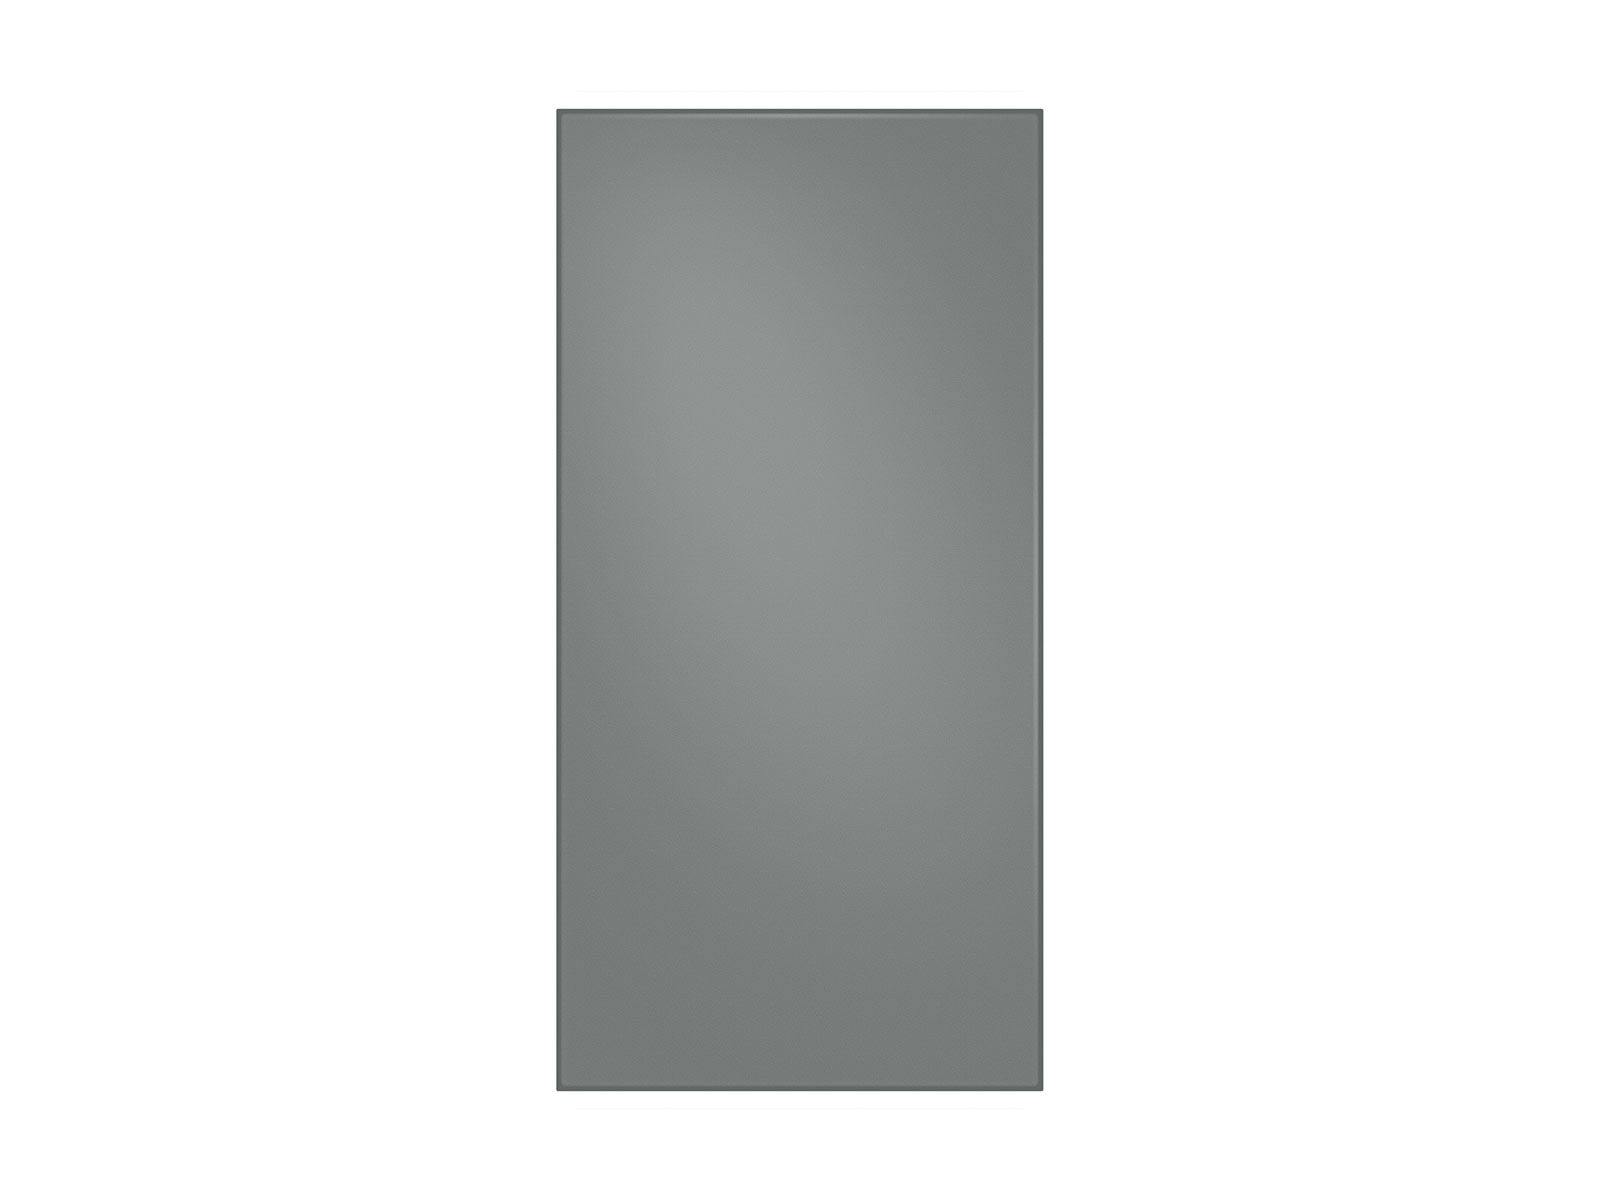 Photos - Fridge Samsung Bespoke 4-Door French Door Refrigerator Panel in Matte in Grey Gla 